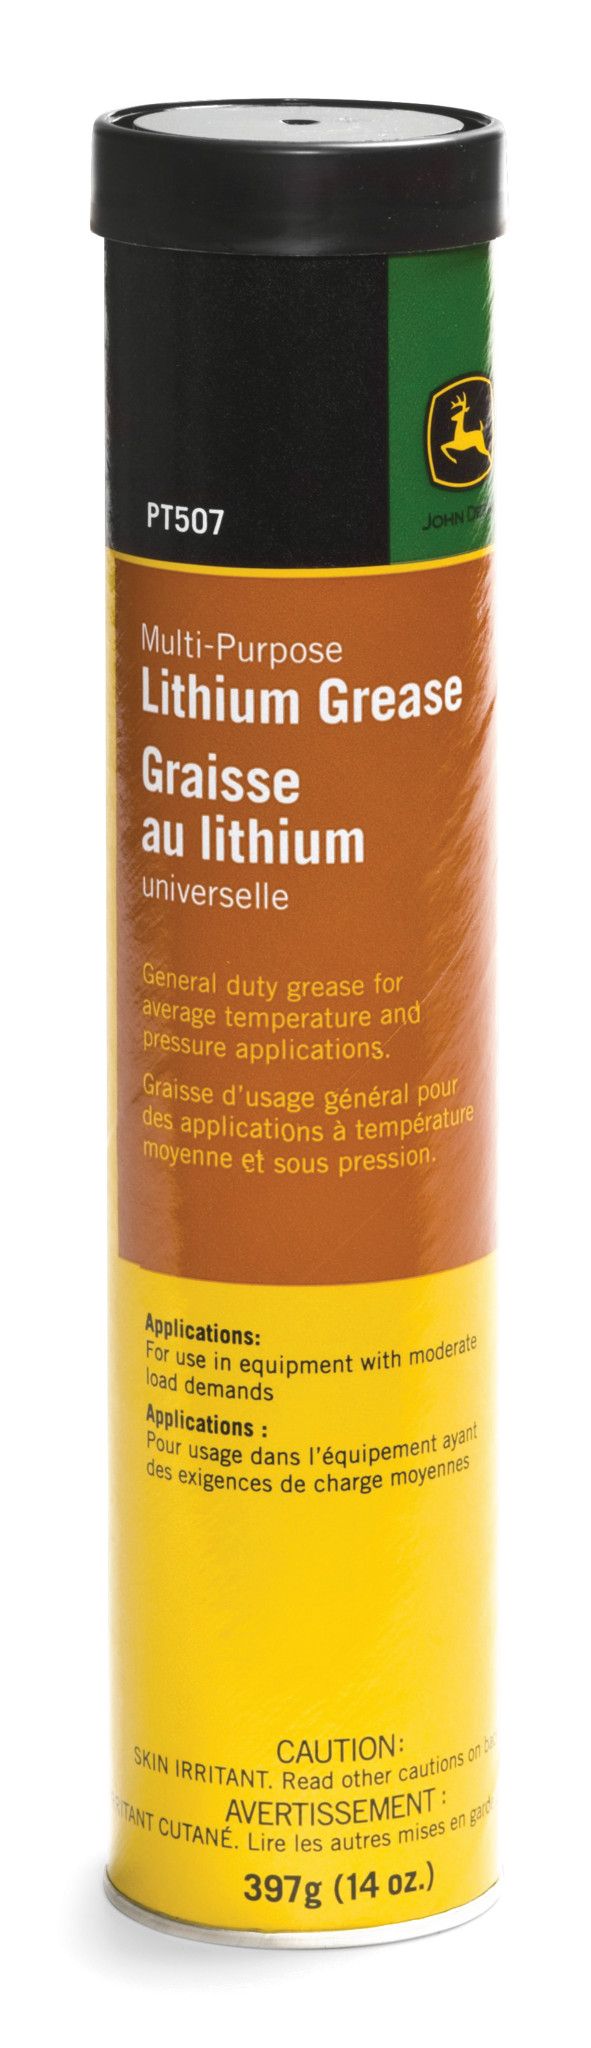 Multi-Purpose Lithium Grease - PT507